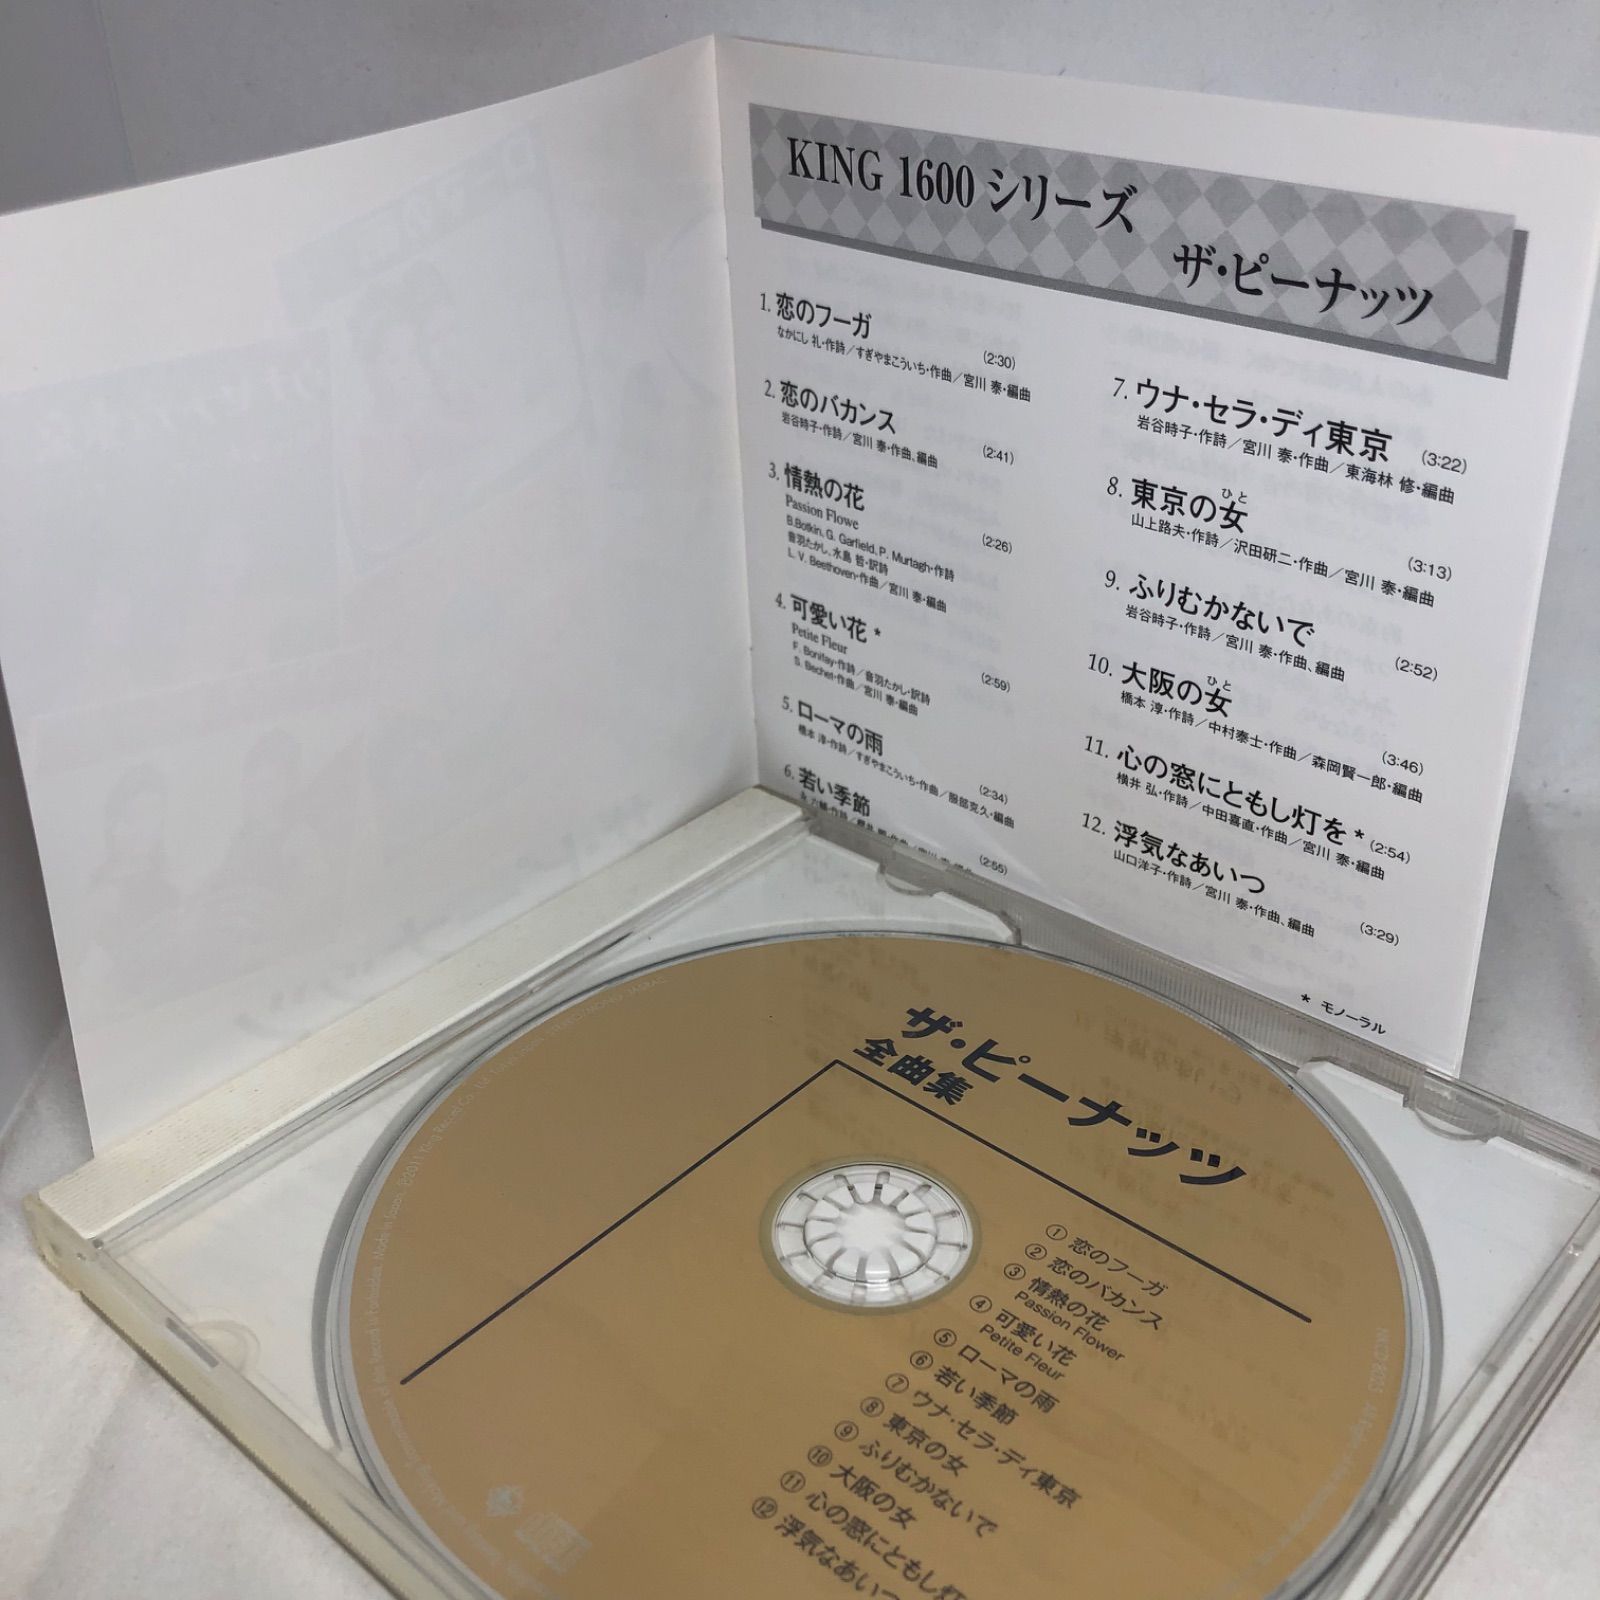 ザ・ピーナッツ/全曲集/ザ・ピーナッツ 全12曲 NKCD8025 - メルカリ